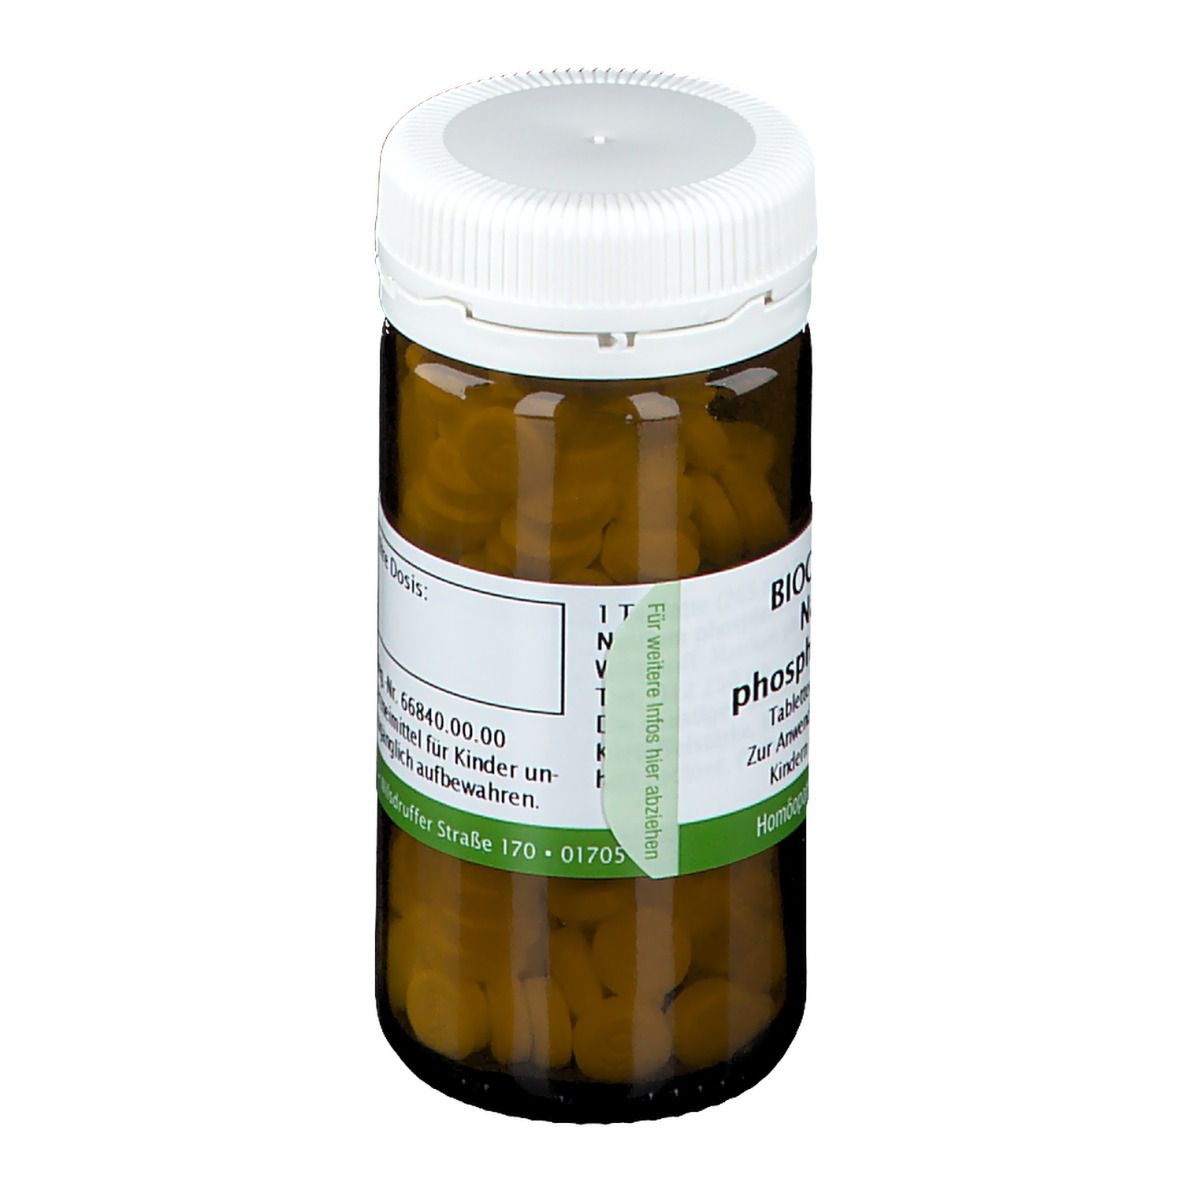 Bombastus Biochemie 9 Natrium phosphoricum D 12 Tabletten